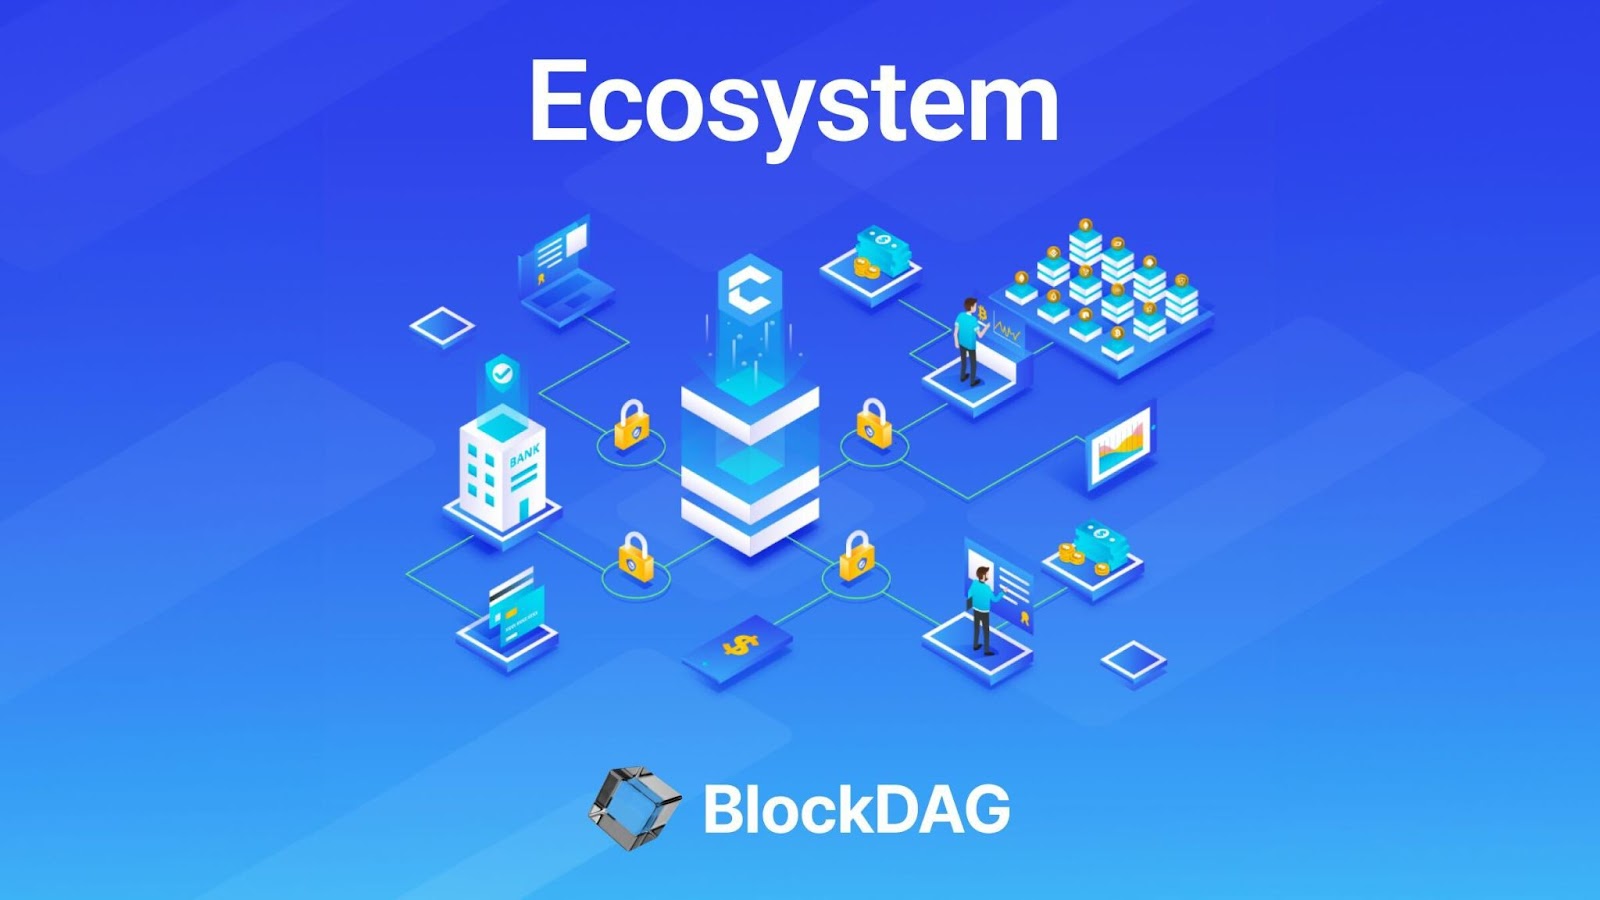 BlockDAG: A Pioneer in Cryptocurrency Presales